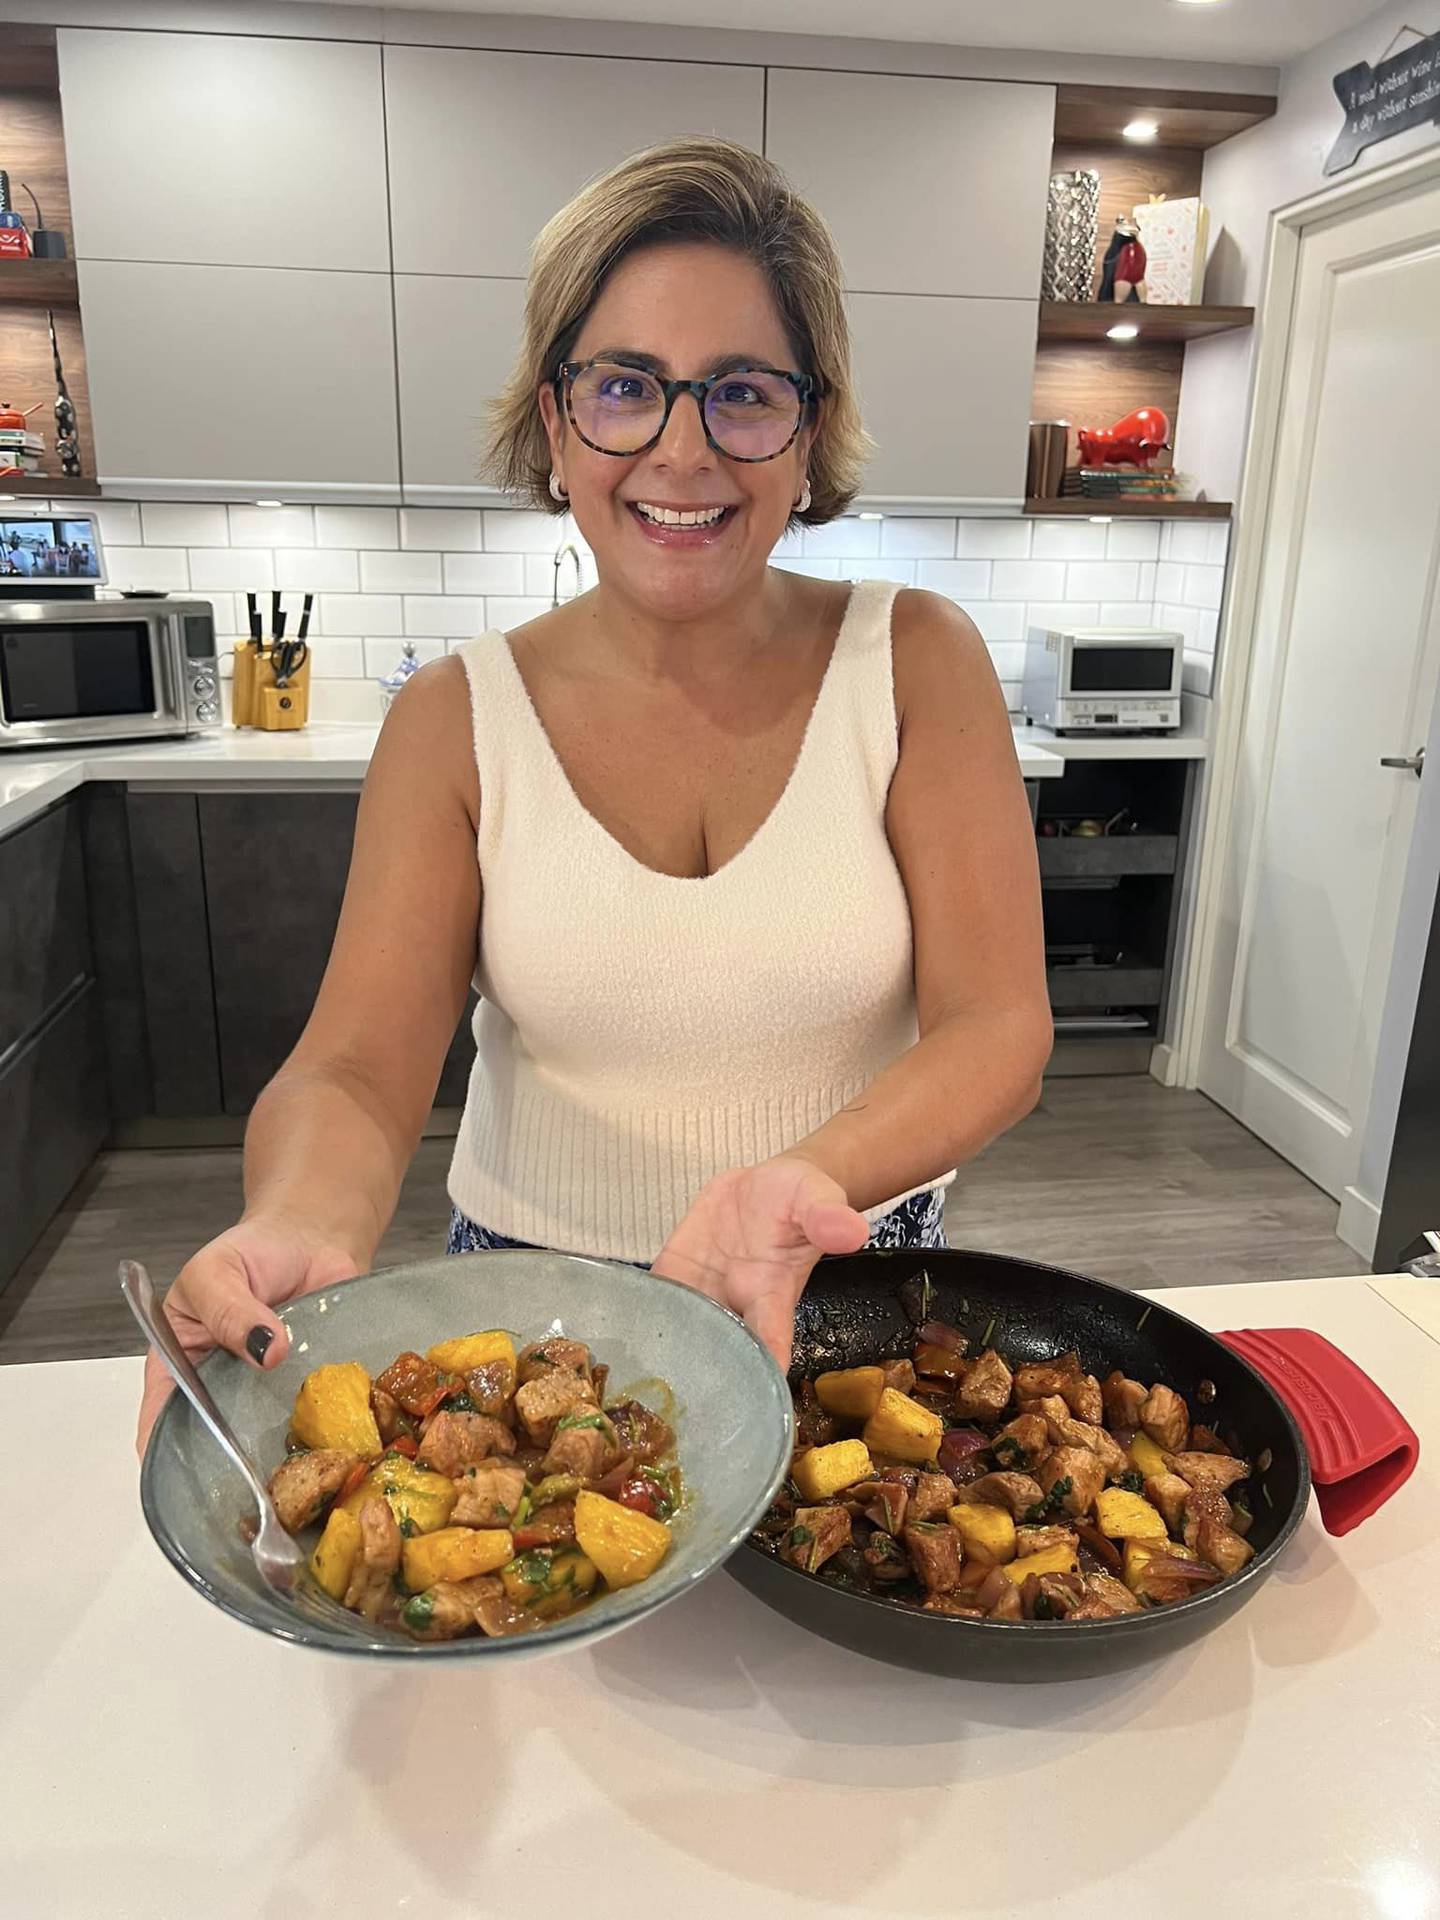 La experiodista de Telenoticias Carol Uriza se divierte en su faceta de cocinera. Facebook.